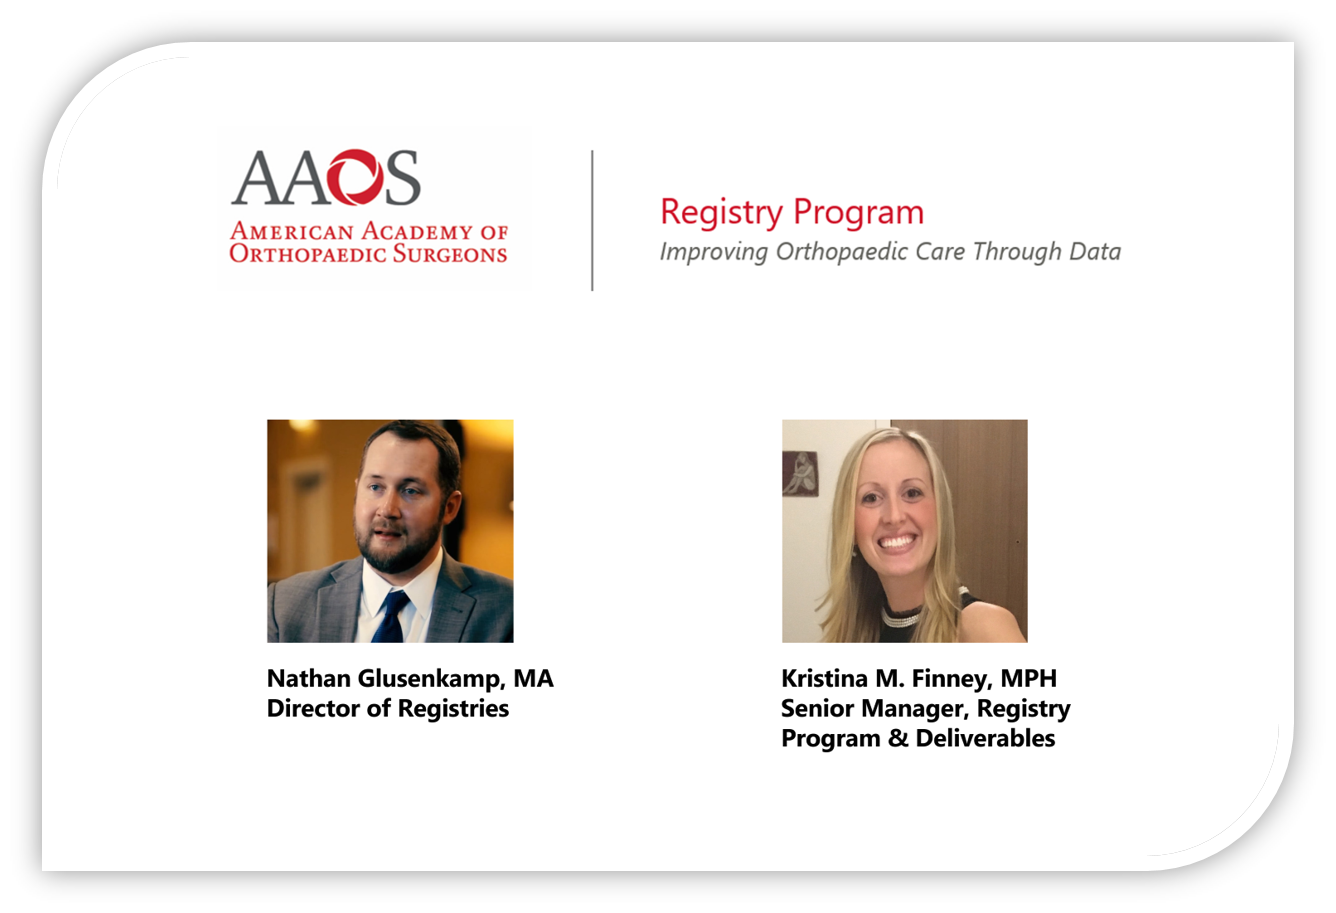 The AAOS Registry Program Leadership